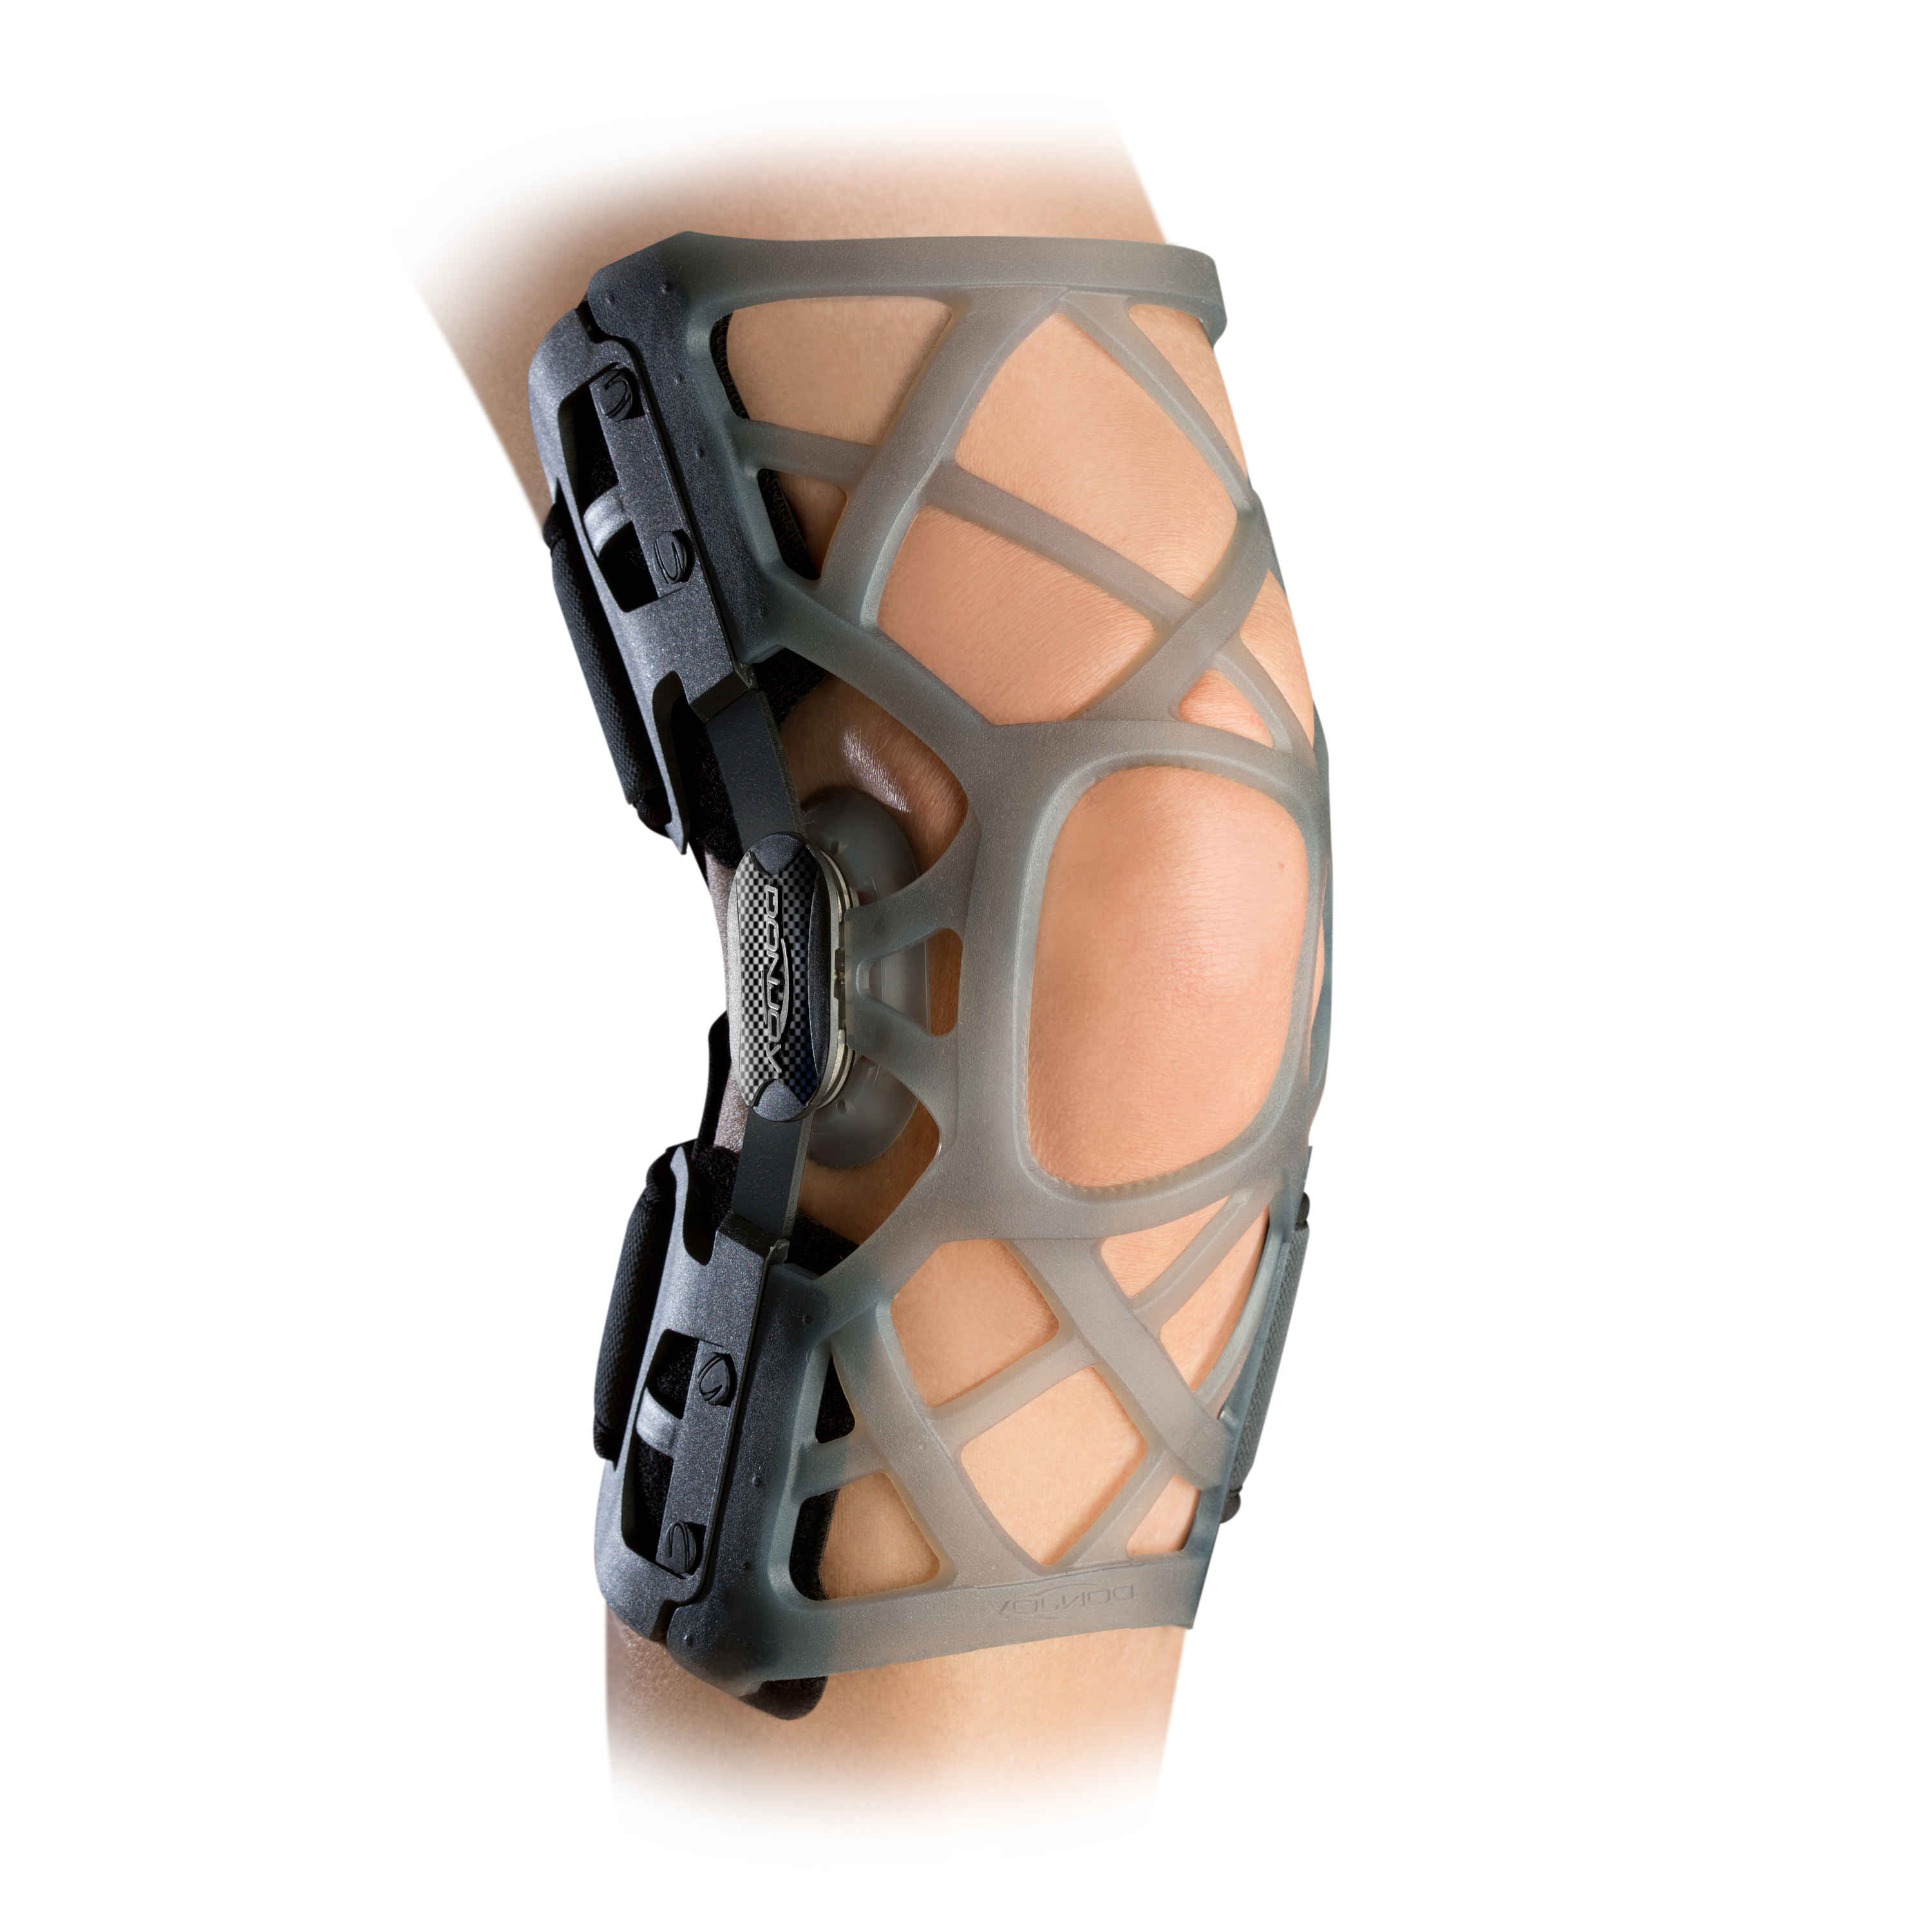 Zusatzbild DONJOY® Matrix OA ohne Strumpf am rechten Bein, Knieorthese zur Entlastung eines Kompartiments nach dem 3-Punkt-Prinzip